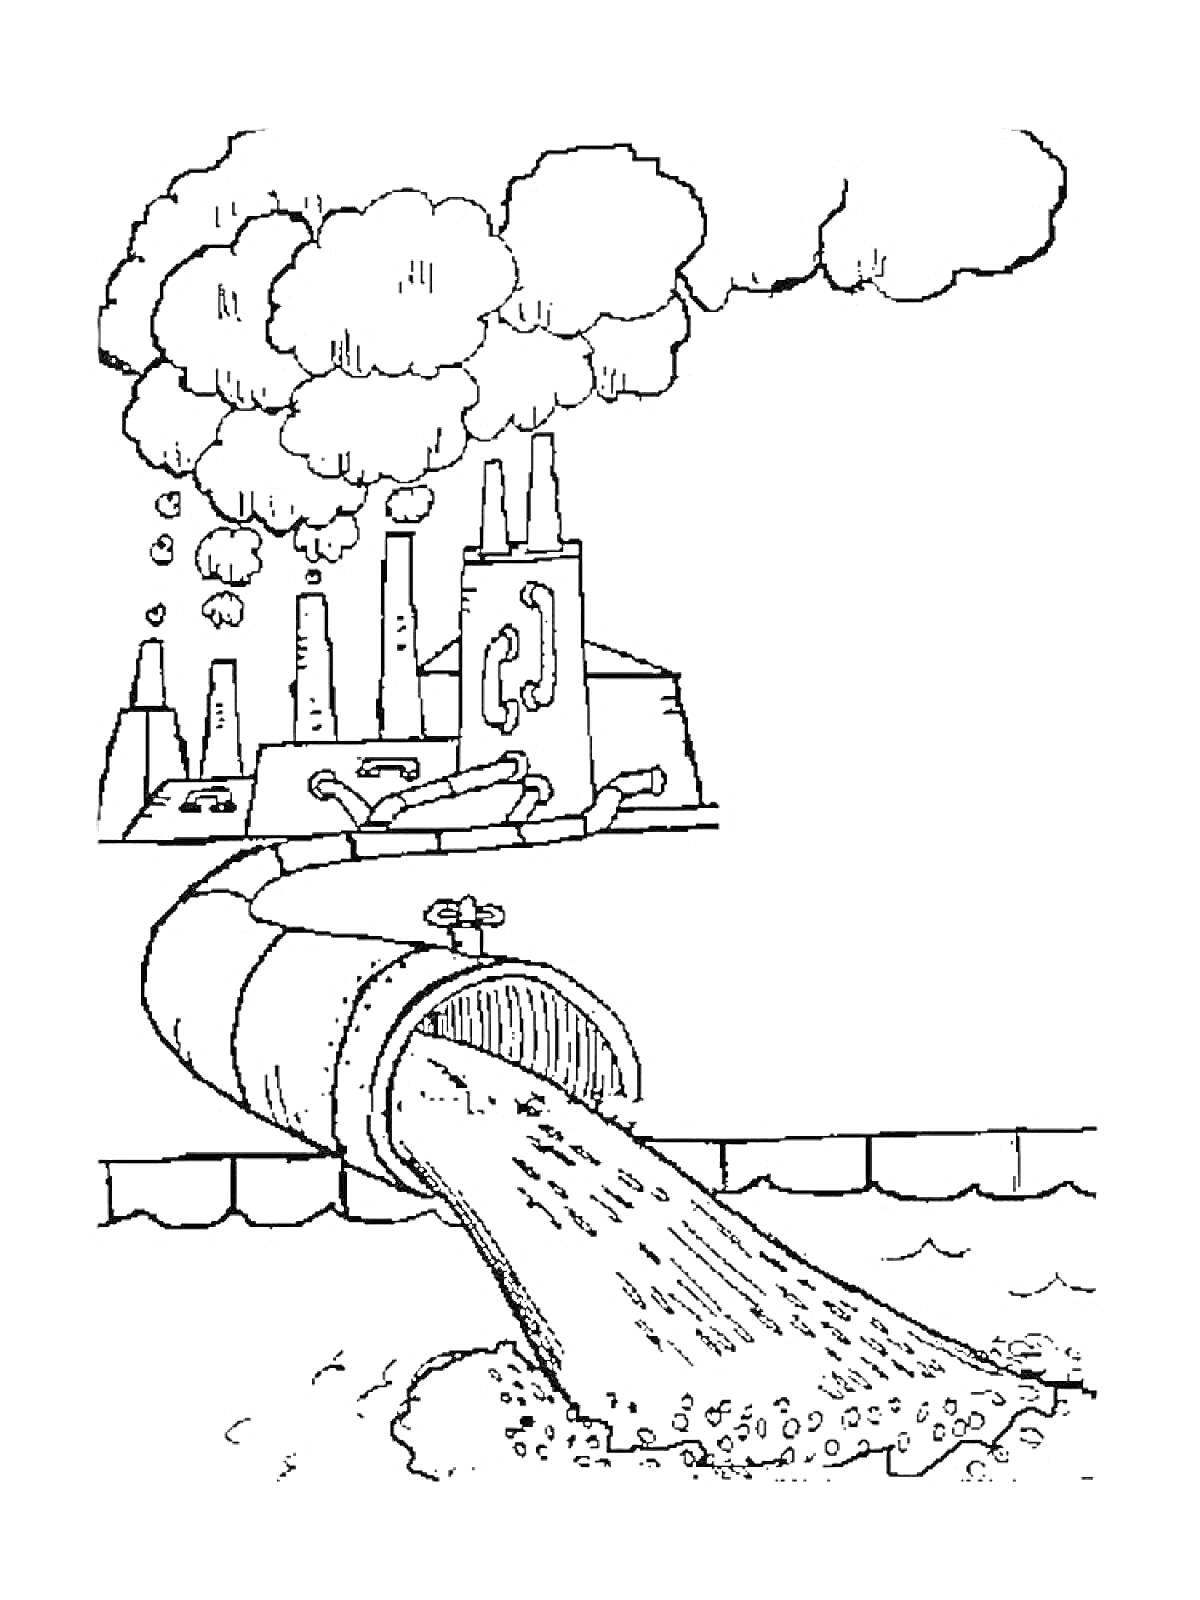 Завод с трубами, выбрасывающими дым, и сток отходов в воду